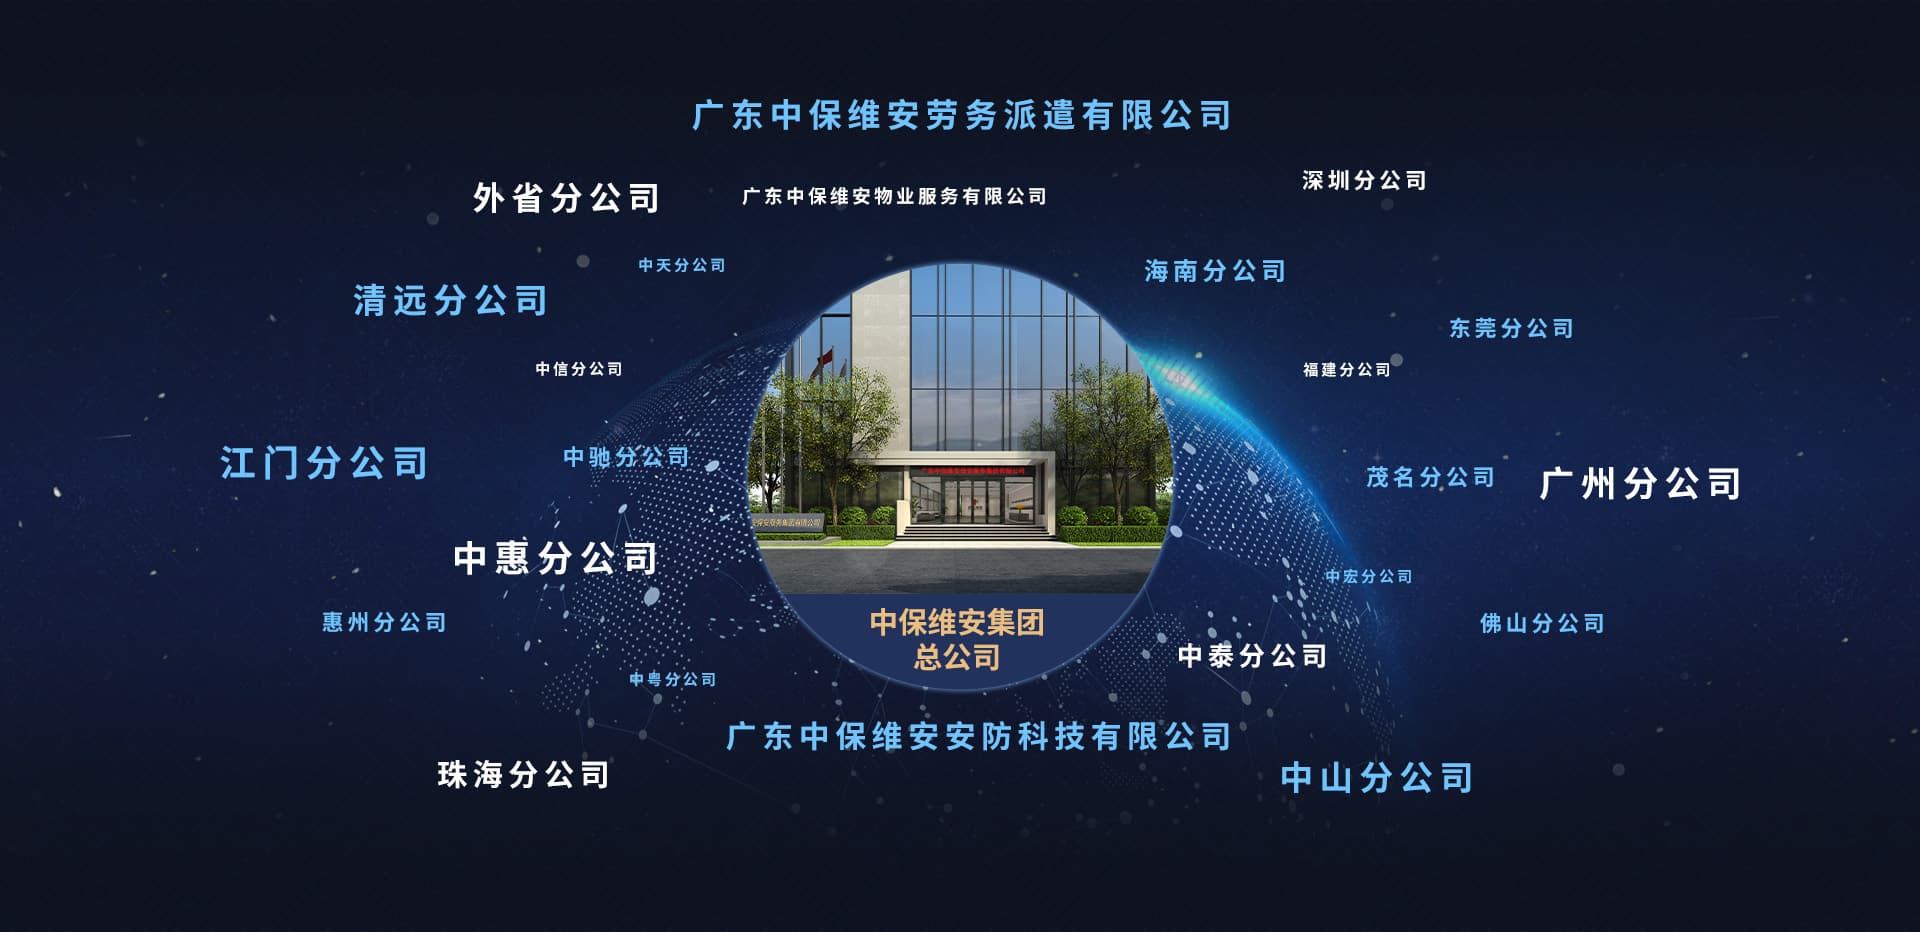 mg娱乐电子游戏网站·(中国)官方入口|登录